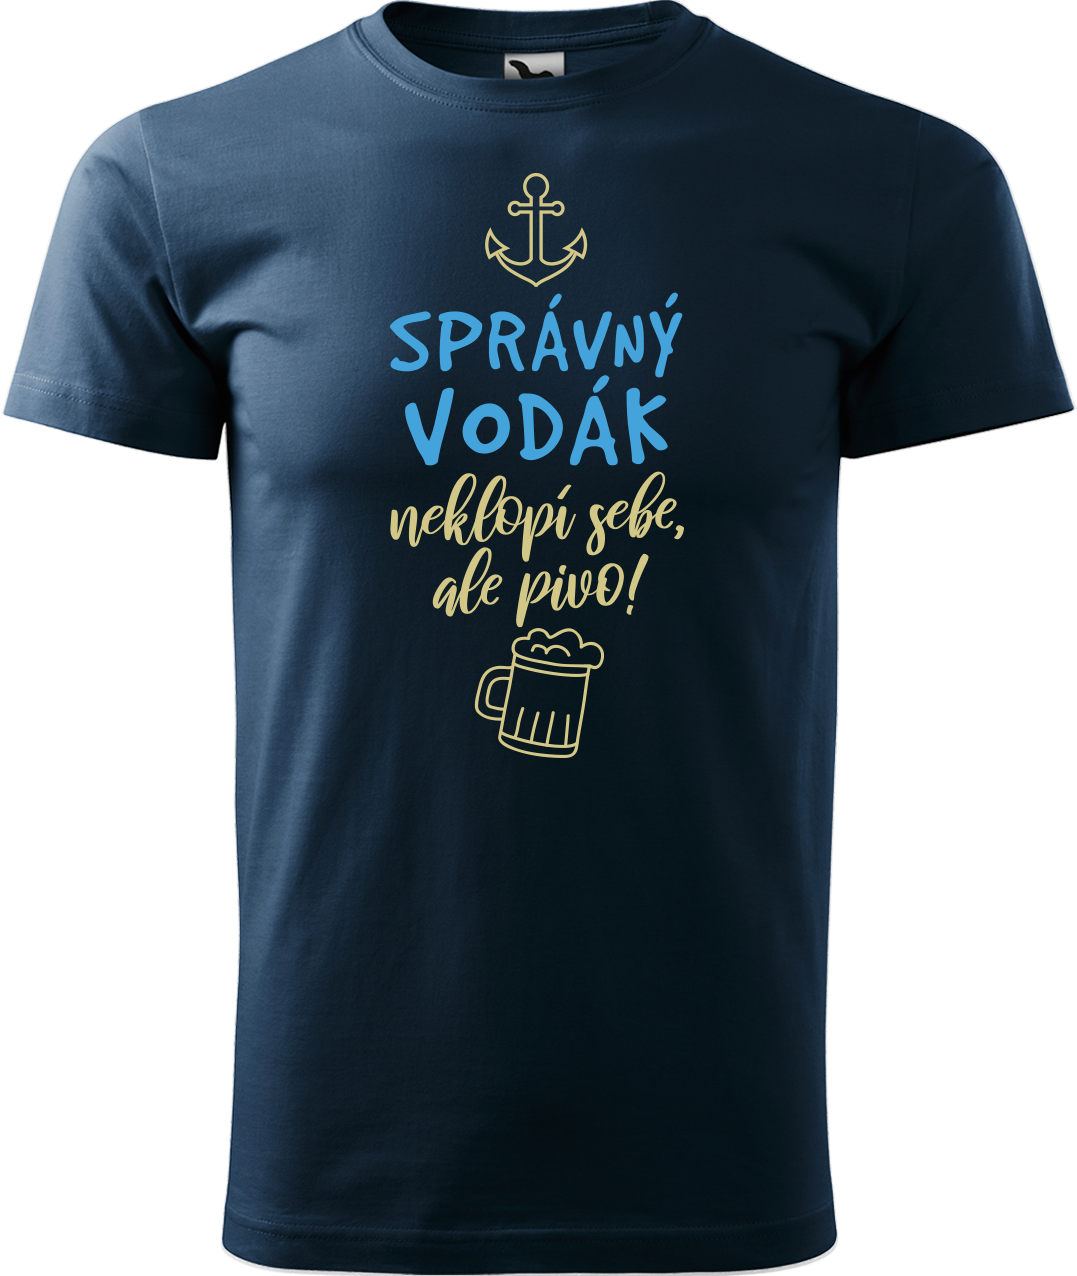 Pánské vodácké tričko - Správný vodák Velikost: 3XL, Barva: Námořní modrá (02)